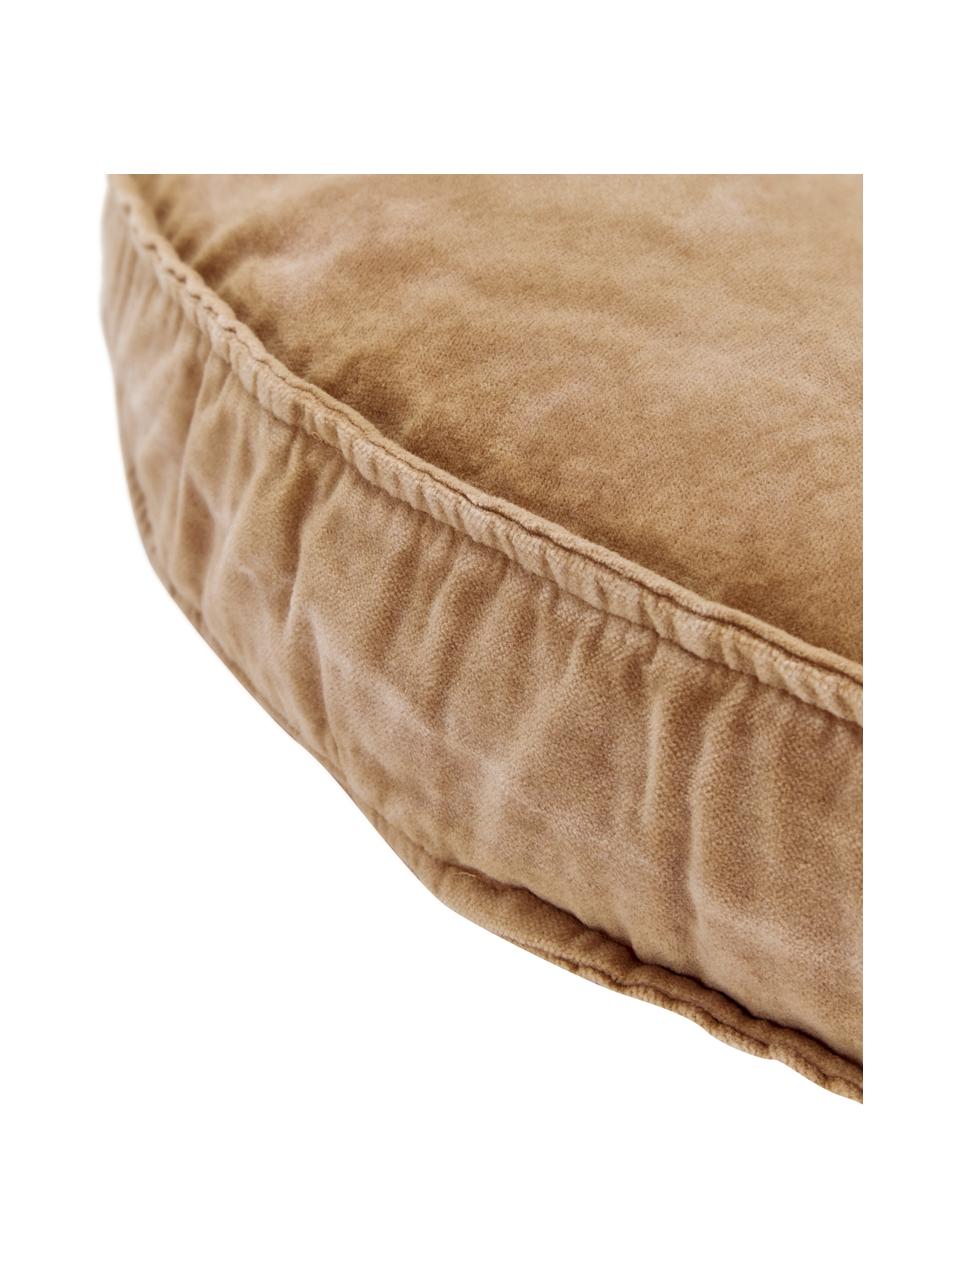 Großes Samt-Sitzkissen Runda, Vorderseite: Baumwollsamt, Rückseite: 100% Baumwolle, Sandfarben, Ø 60 x H 6 cm